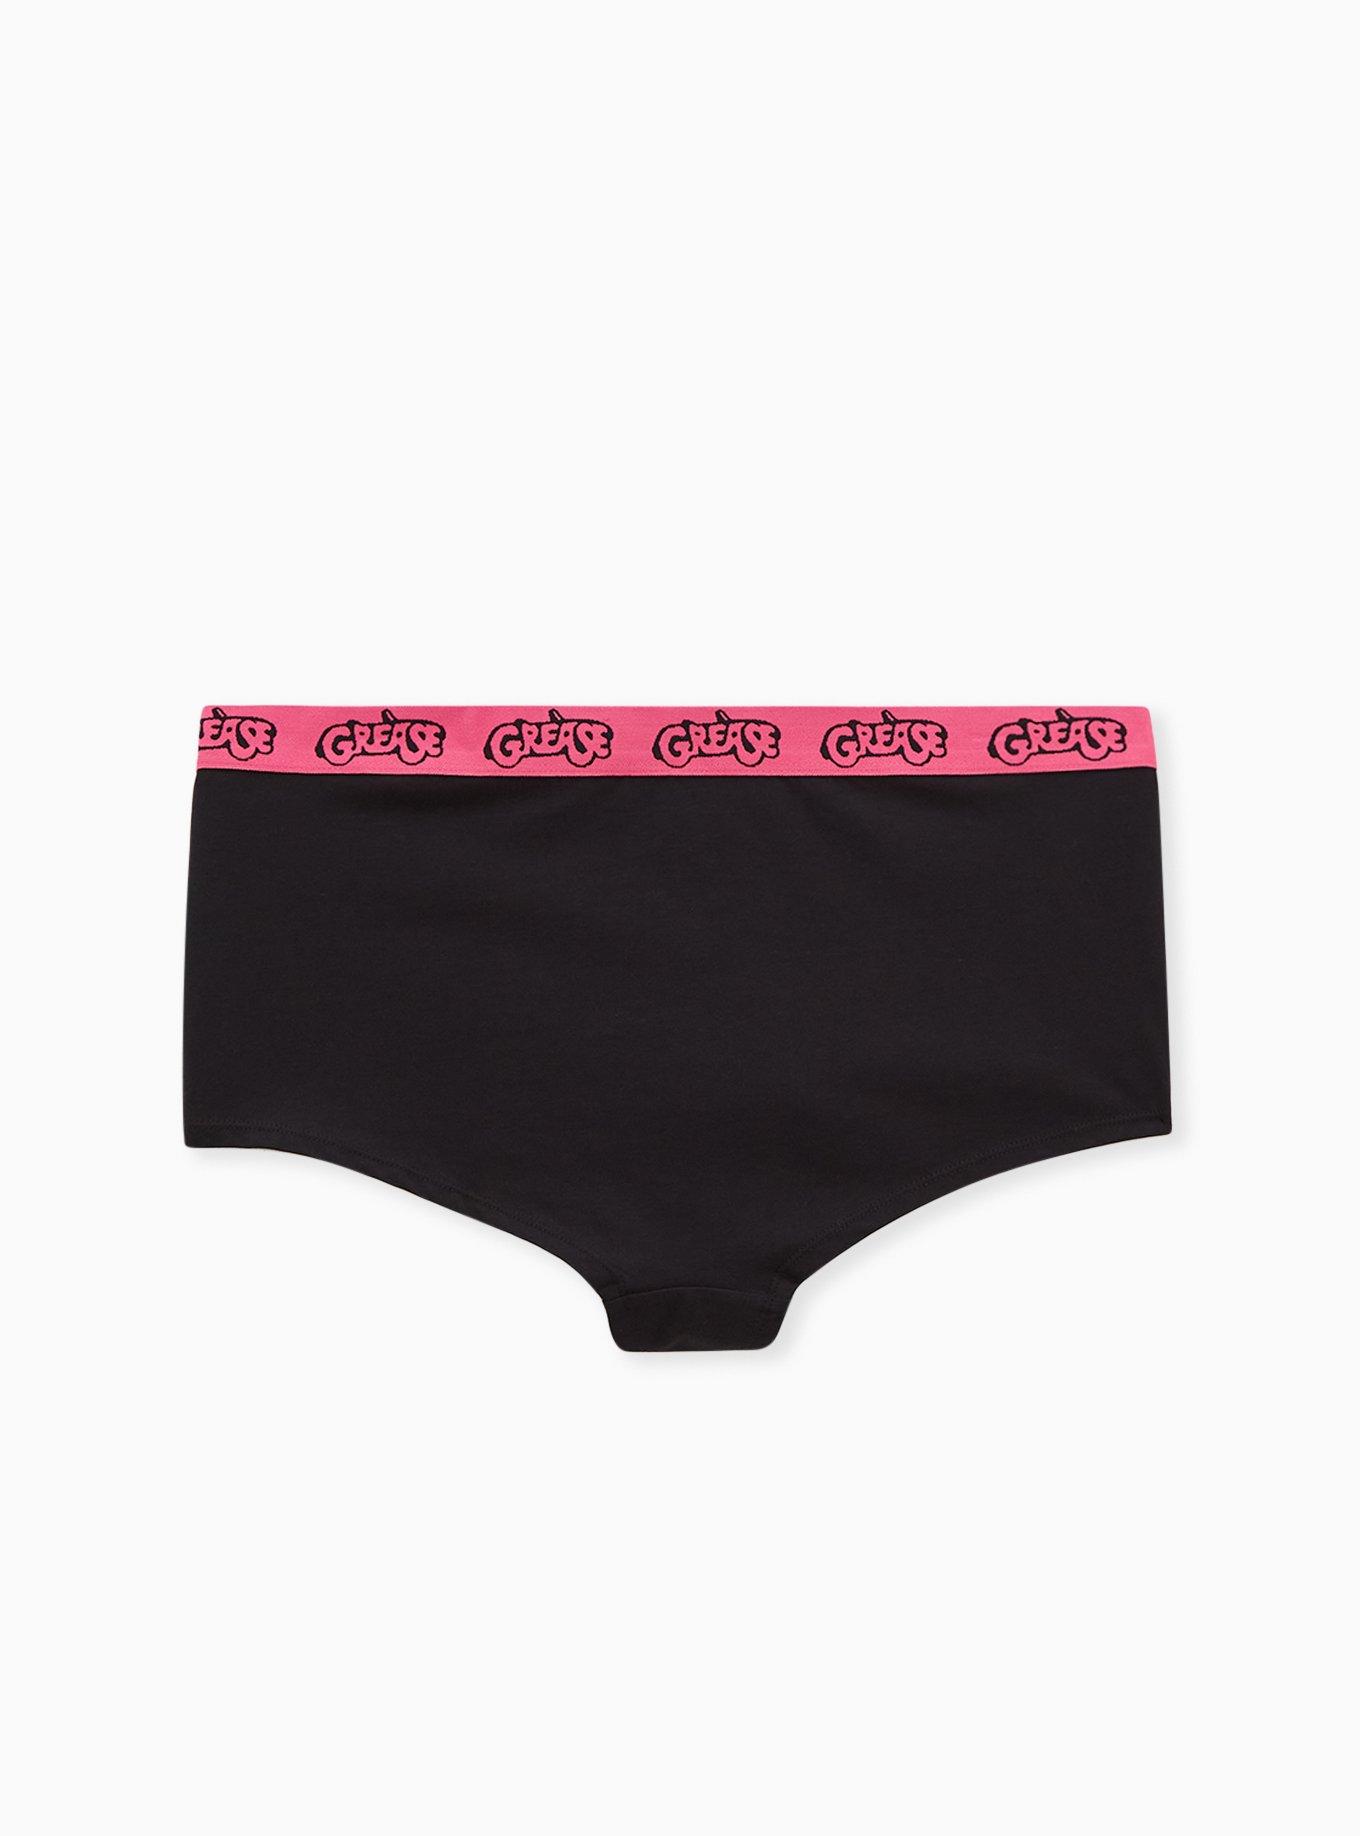 Plus Size - Grease Pink Ladies Black Cotton Boyshort Panty - Torrid